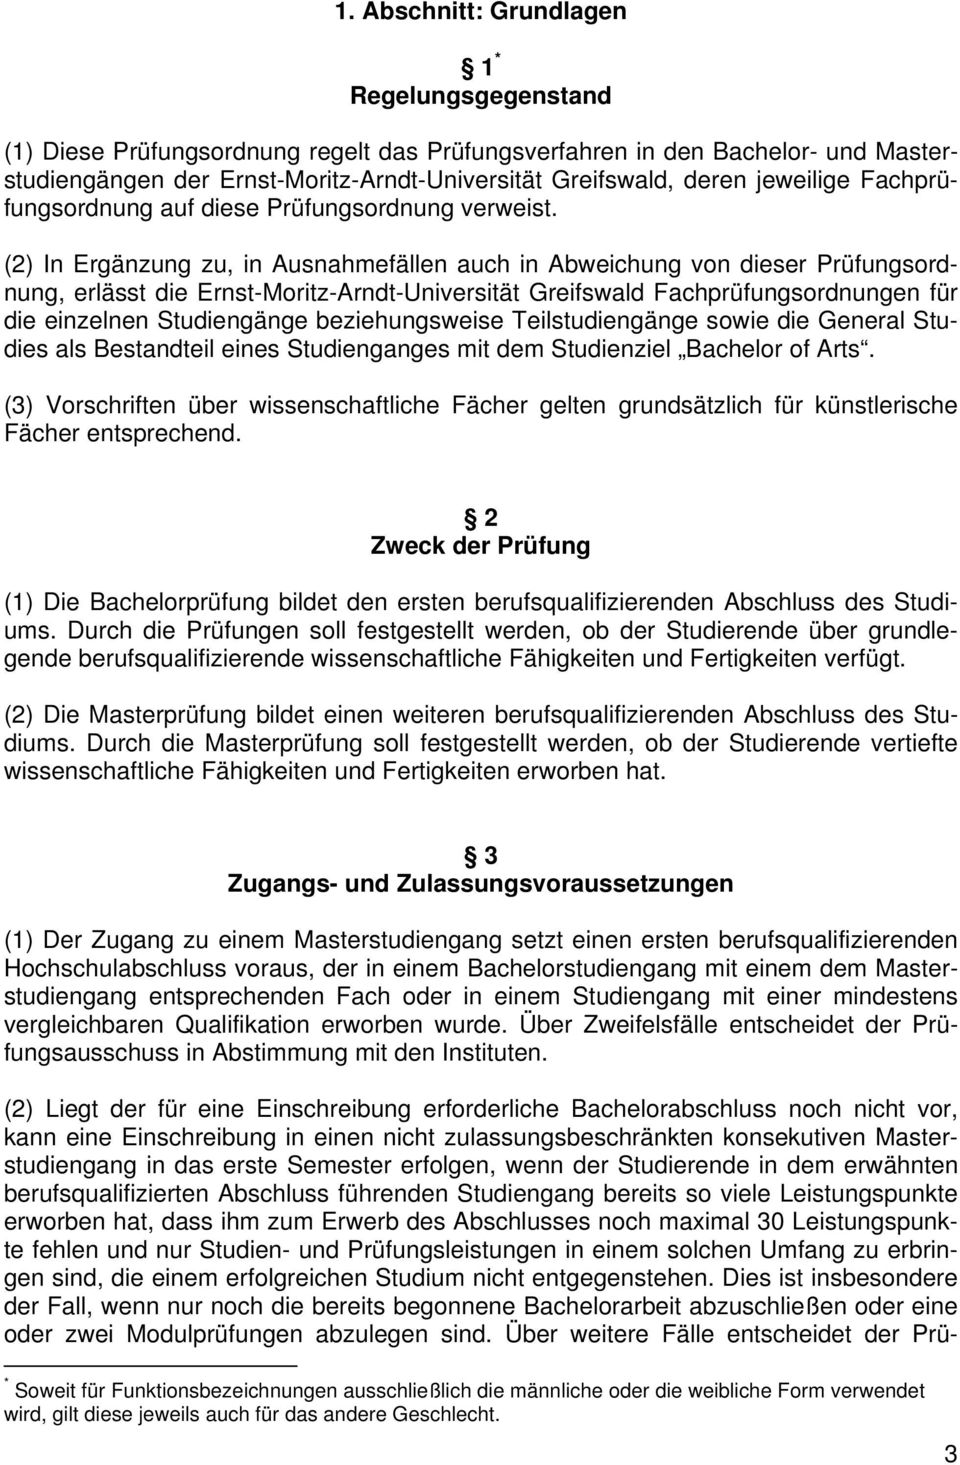 (2) In Ergänzung zu, in Ausnahmefällen auch in Abweichung von dieser Prüfungsordnung, erlässt die Ernst-Moritz-Arndt-Universität Greifswald Fachprüfungsordnungen für die einzelnen Studiengänge